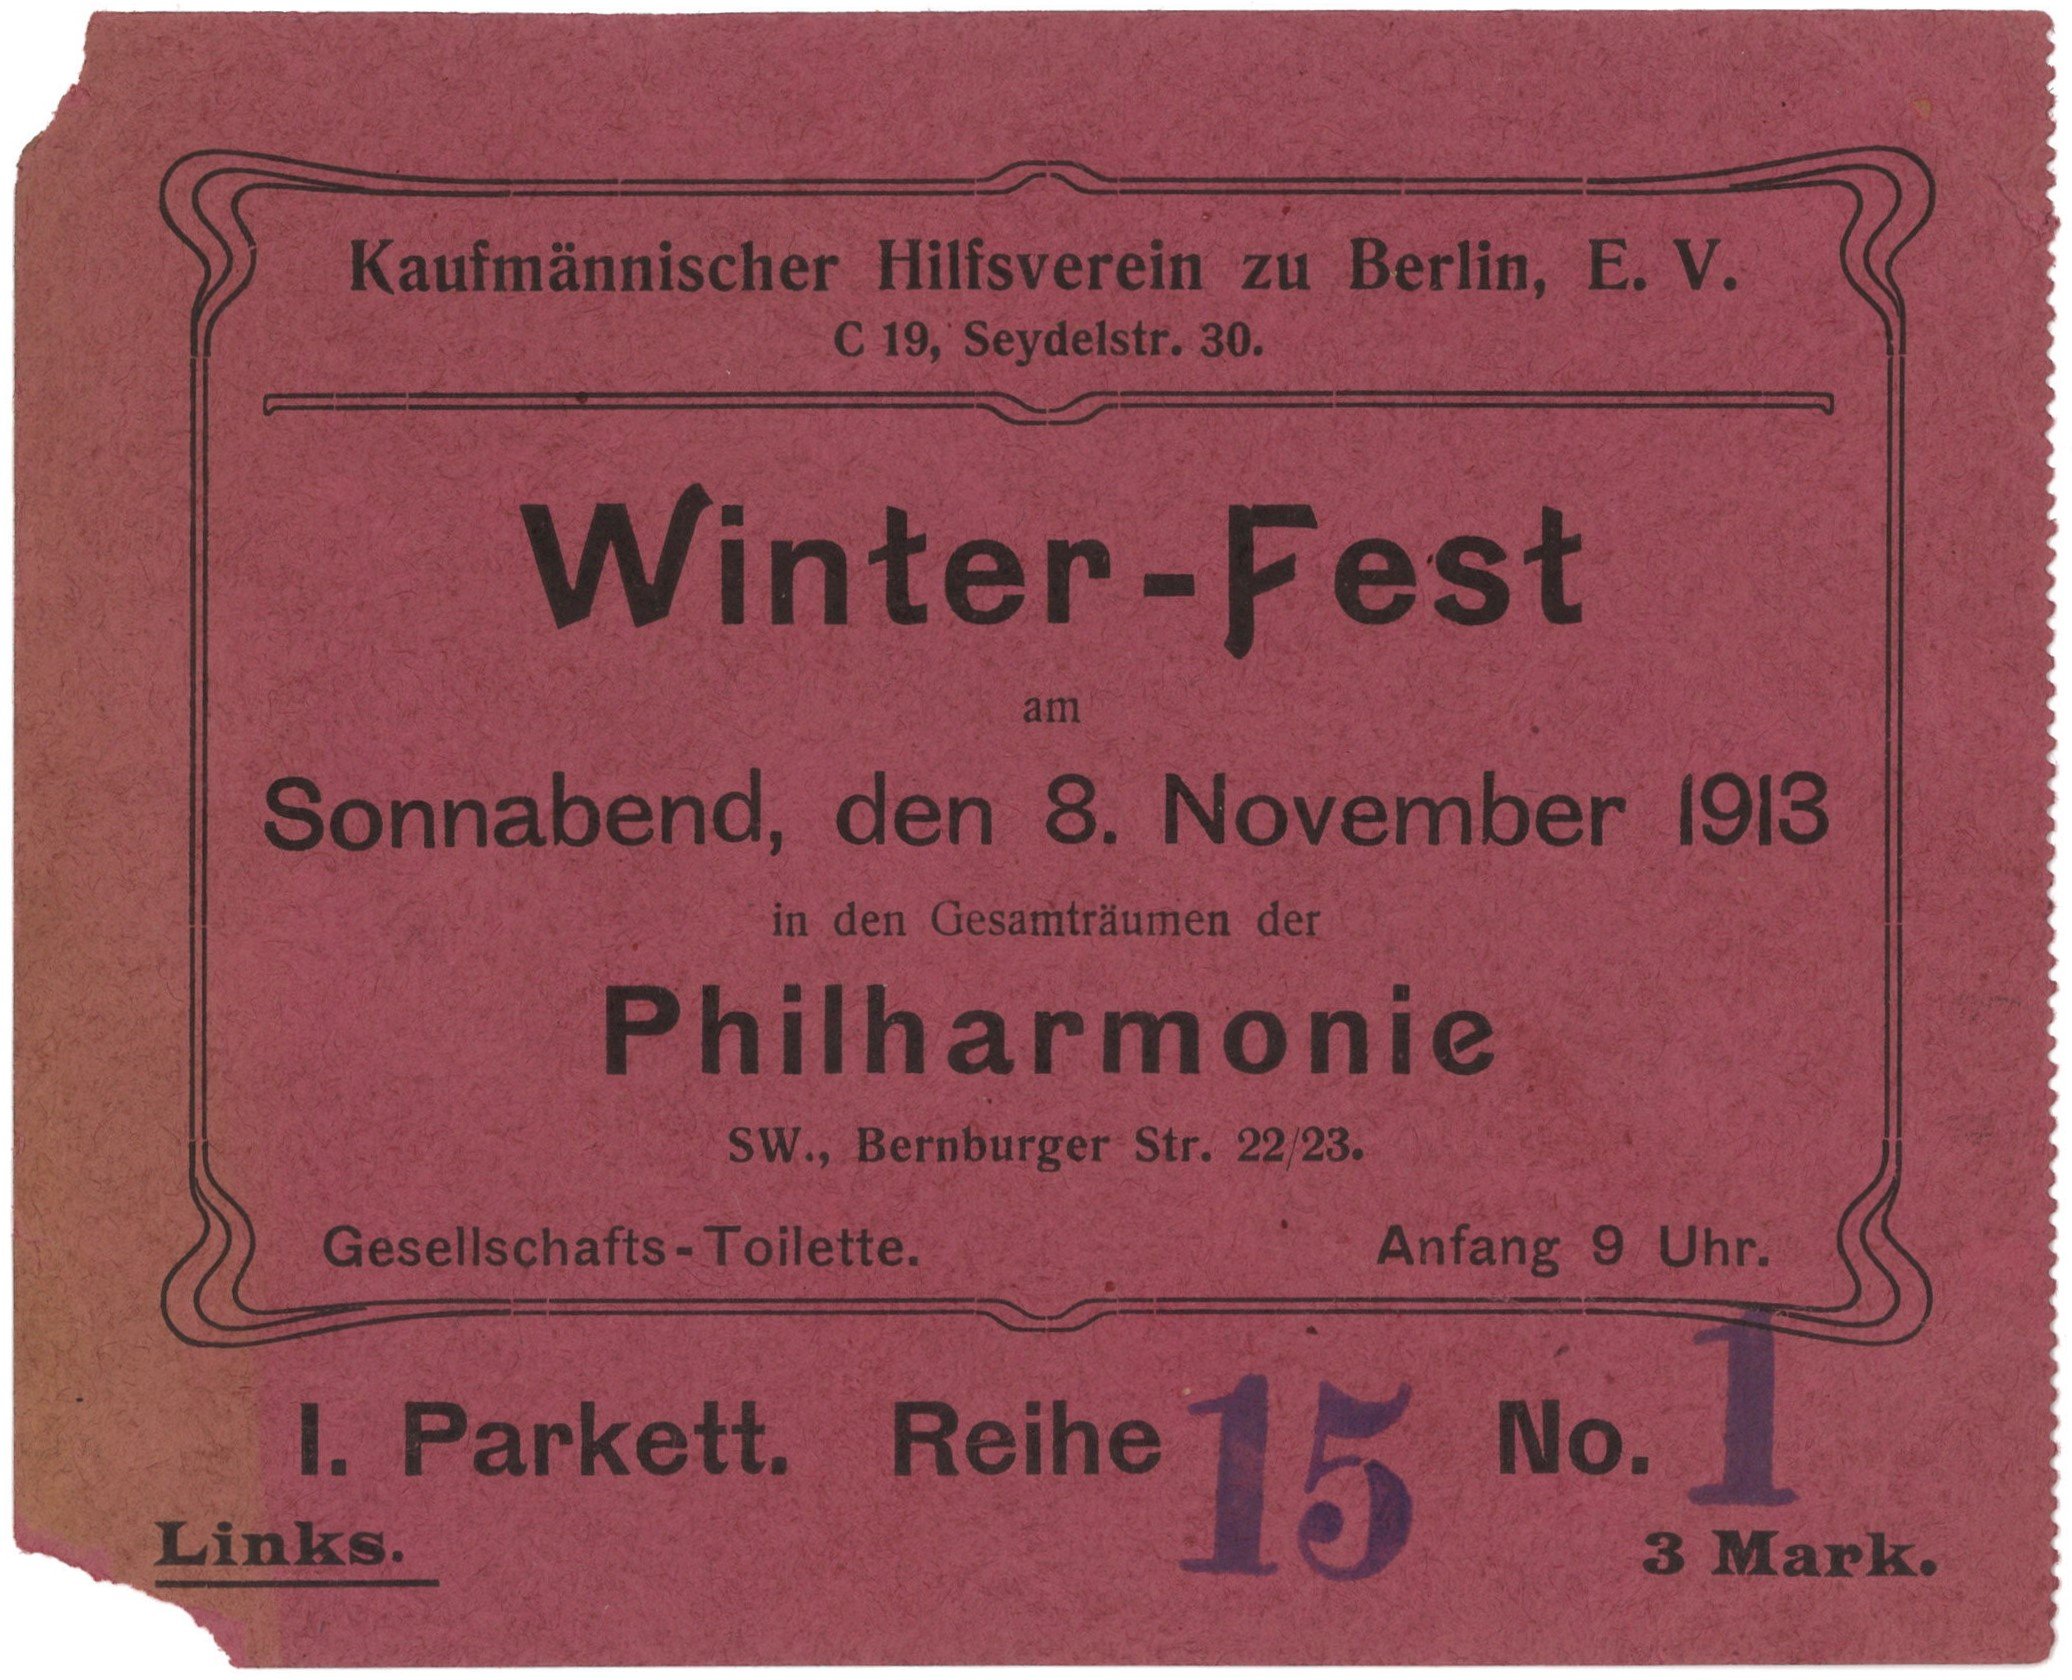 Berlin-Kreuzberg: Philharmonie: Winterfest des Kaufmännischen Hilfsvereins zu Berlin 1913 (Landesgeschichtliche Vereinigung für die Mark Brandenburg e.V., Archiv CC BY)